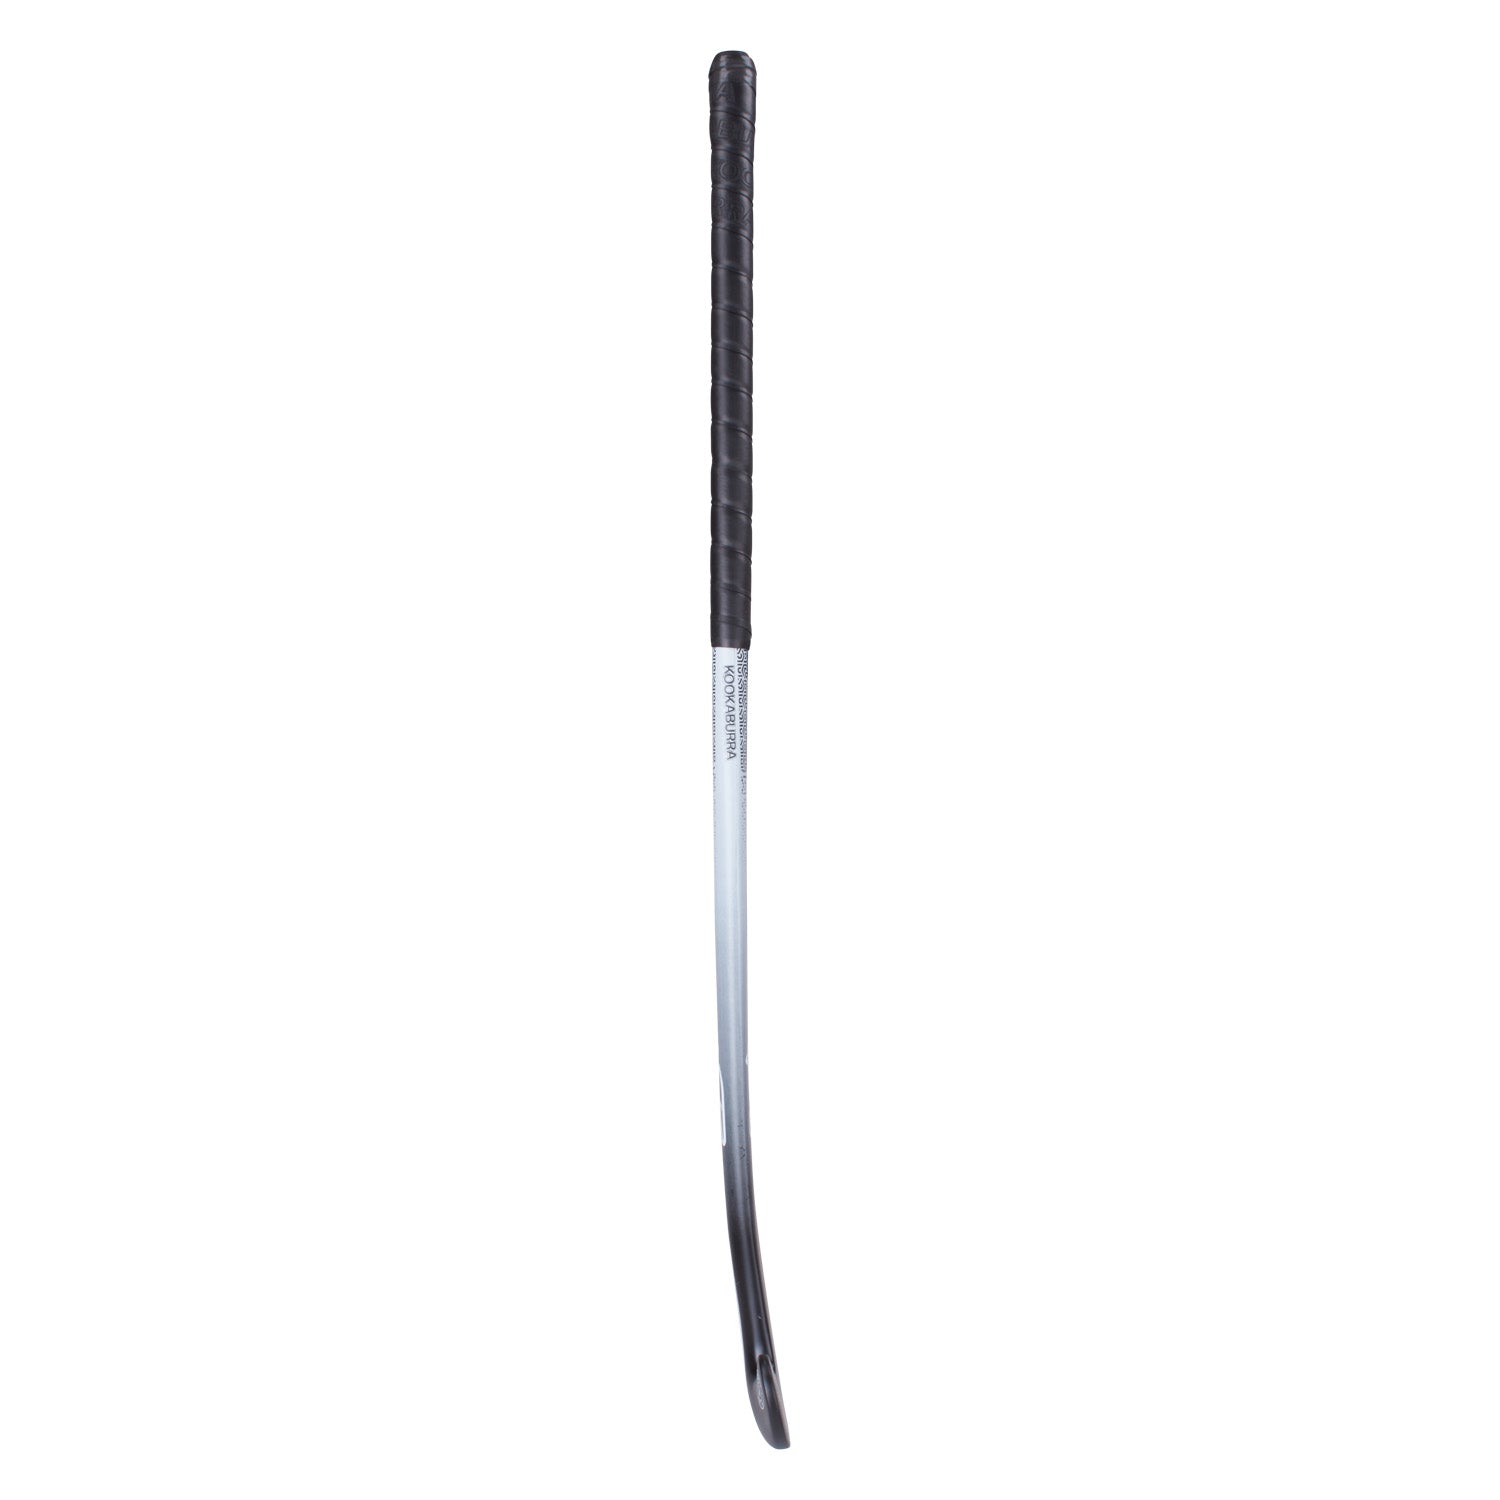 Kookaburra Eclipse L-Bow 37.5 Light Hockey Stick